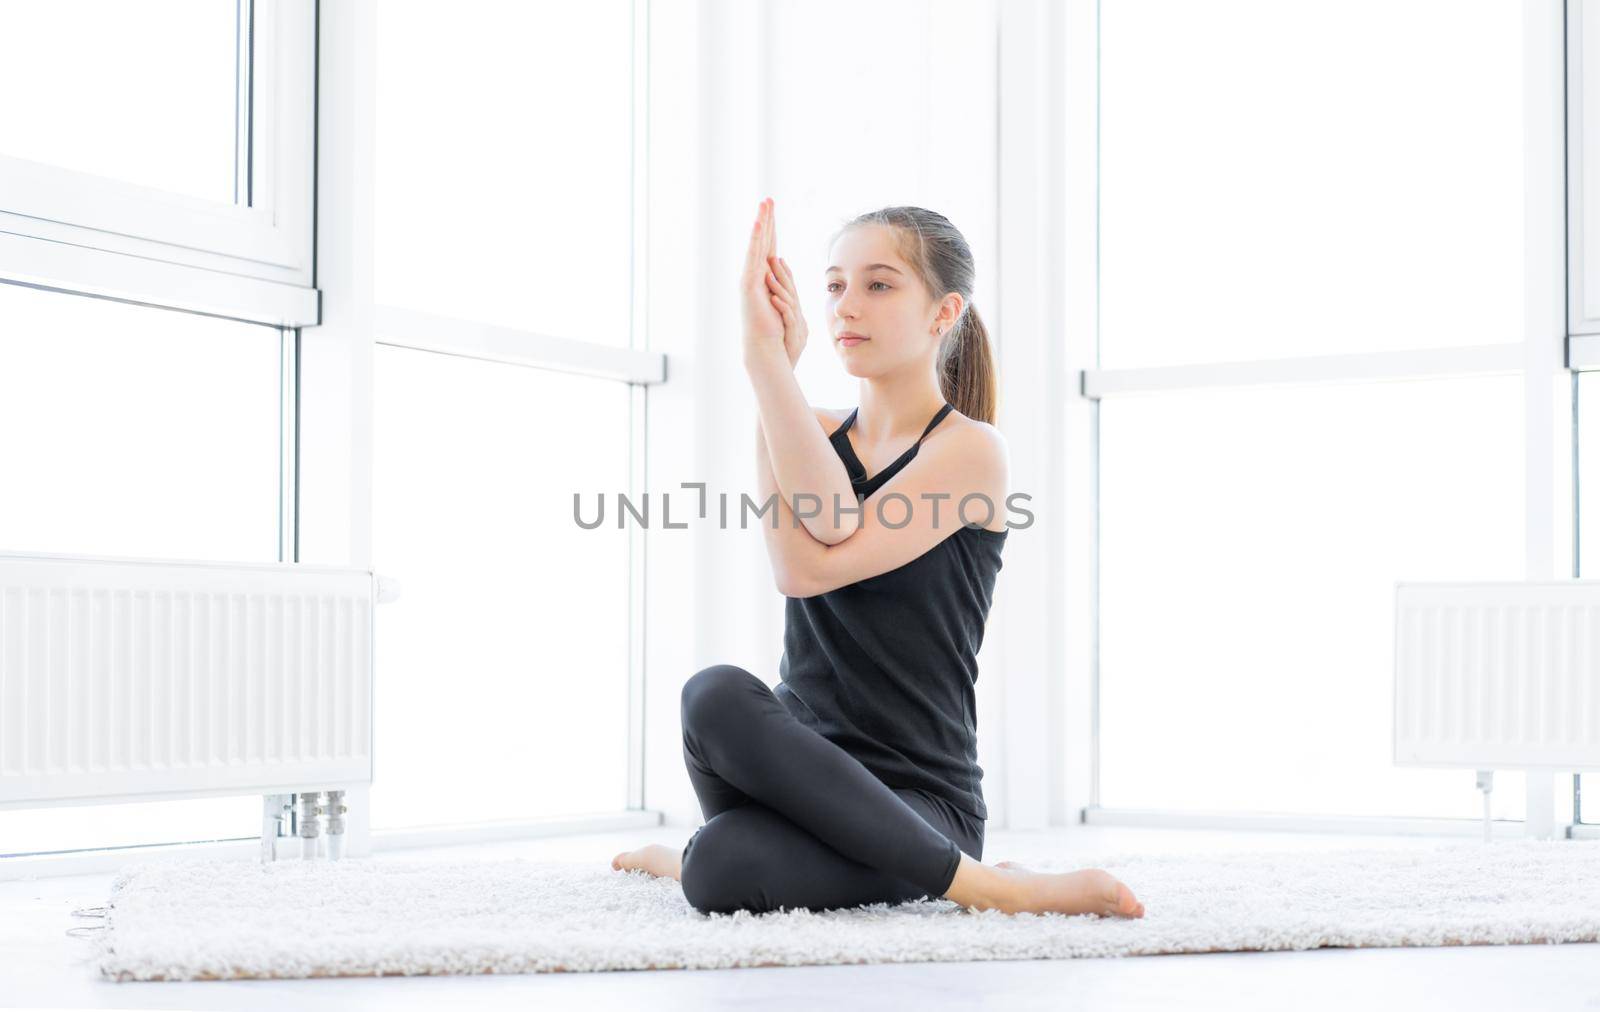 Beautiful girl doing yoga asana by GekaSkr